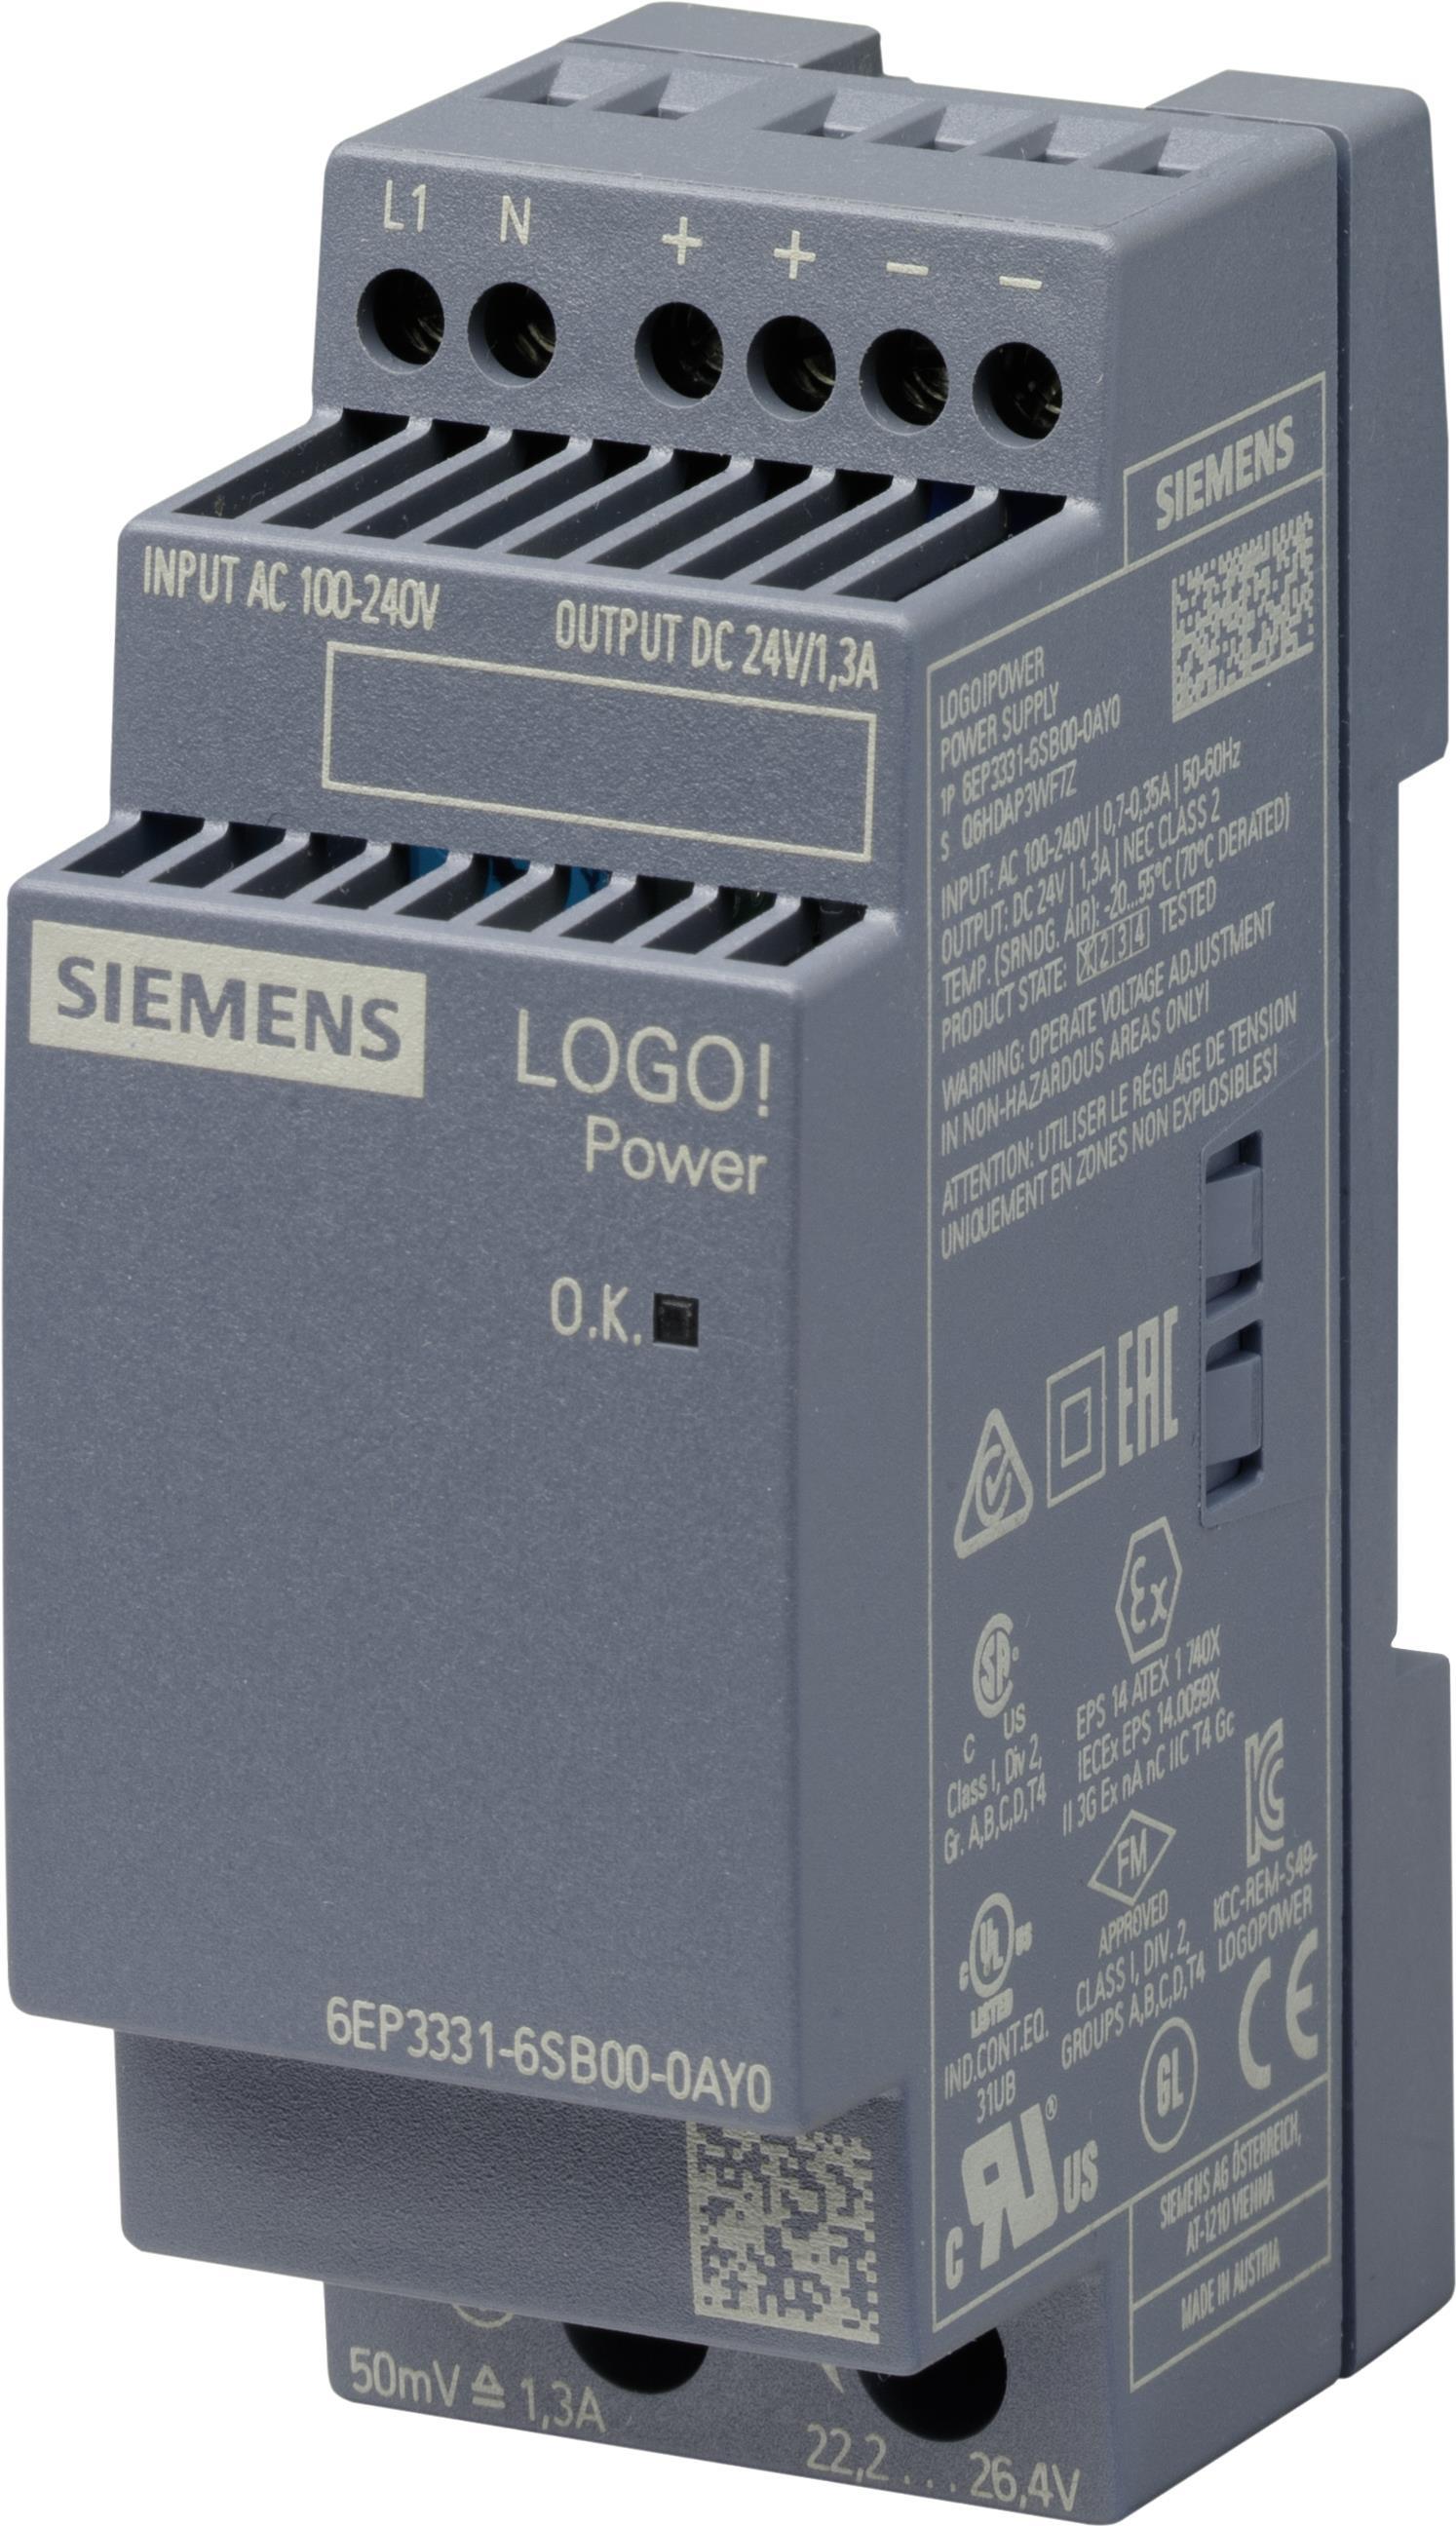 Siemens 6EP3331-6SB00-0AY0 Netzteil & Spannungsumwandler Indoor Mehrfarbig (6EP3331-6SB00-0AY0)